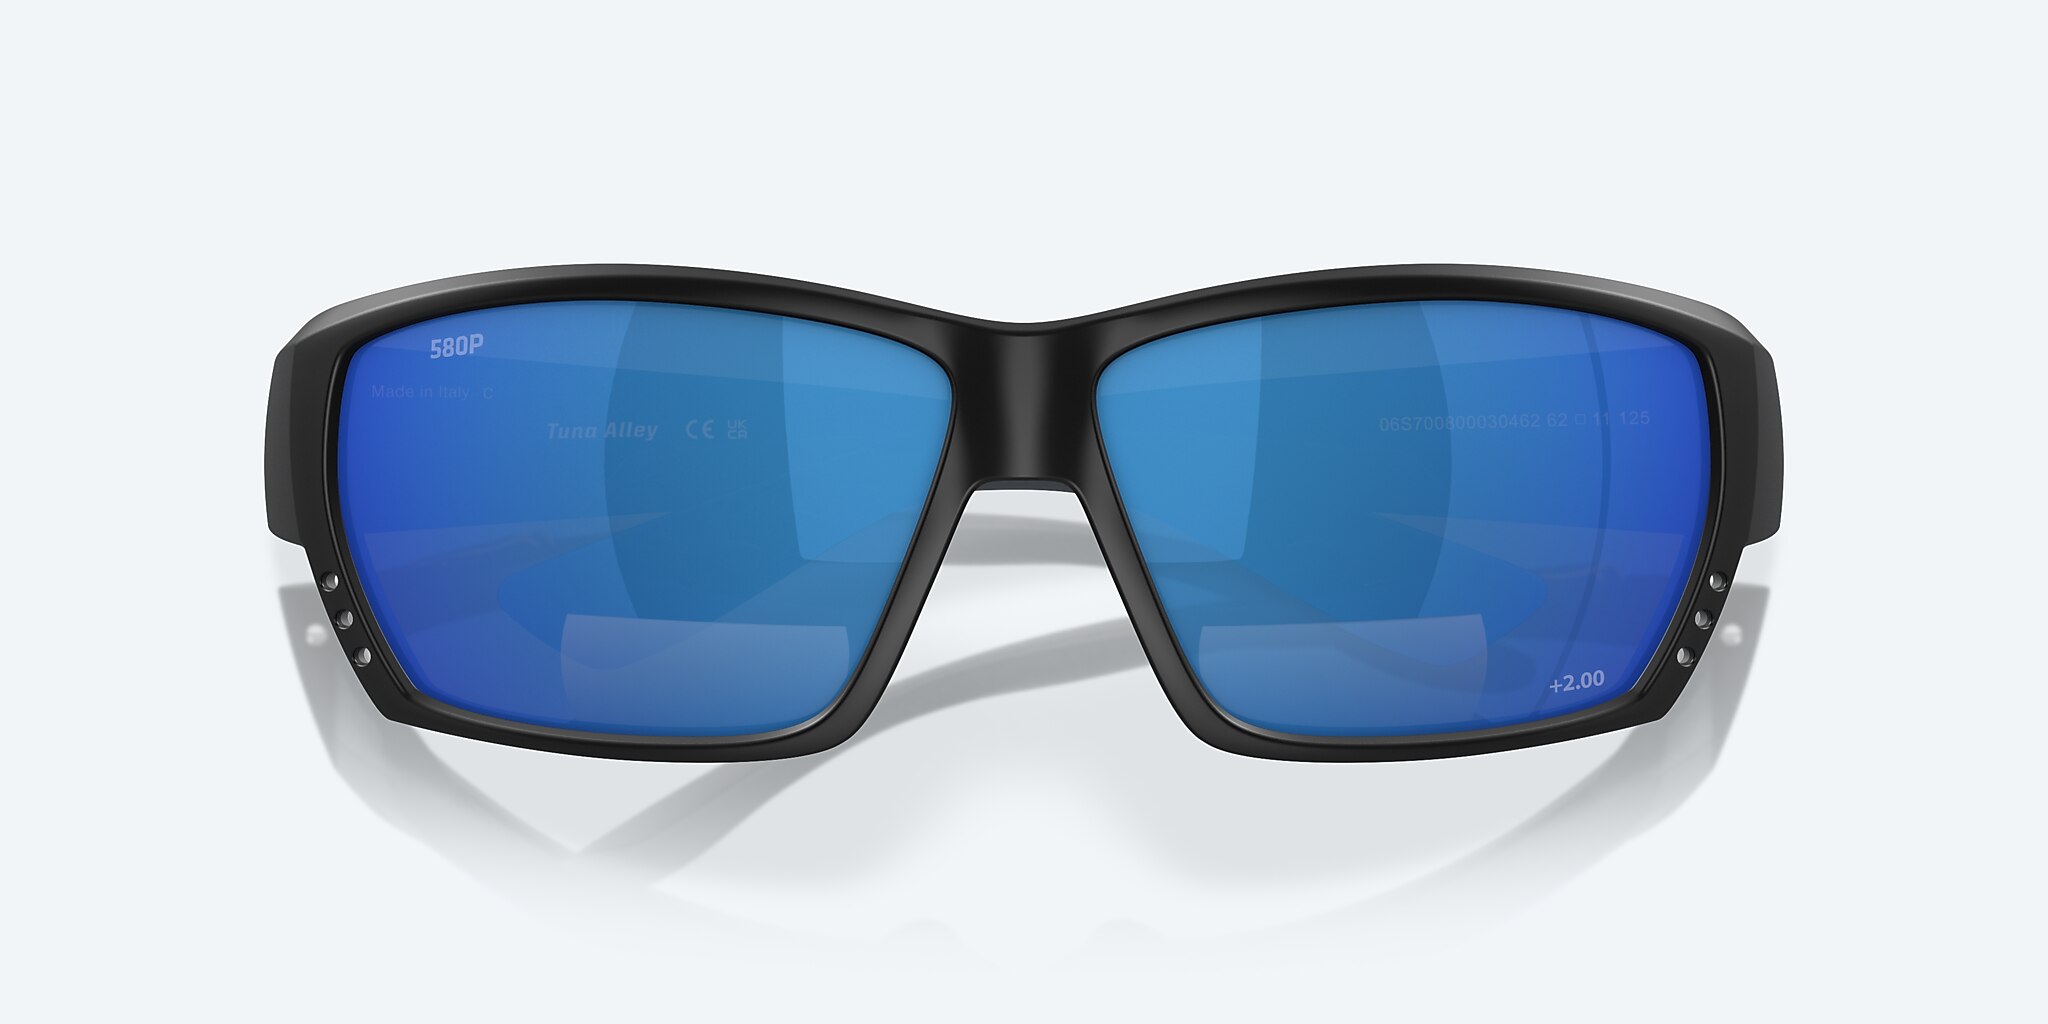 Costa Del Mar Tuna Alley C-Mate 2.00 Sunglasses Matte Black Blue Mirror 580P Lens